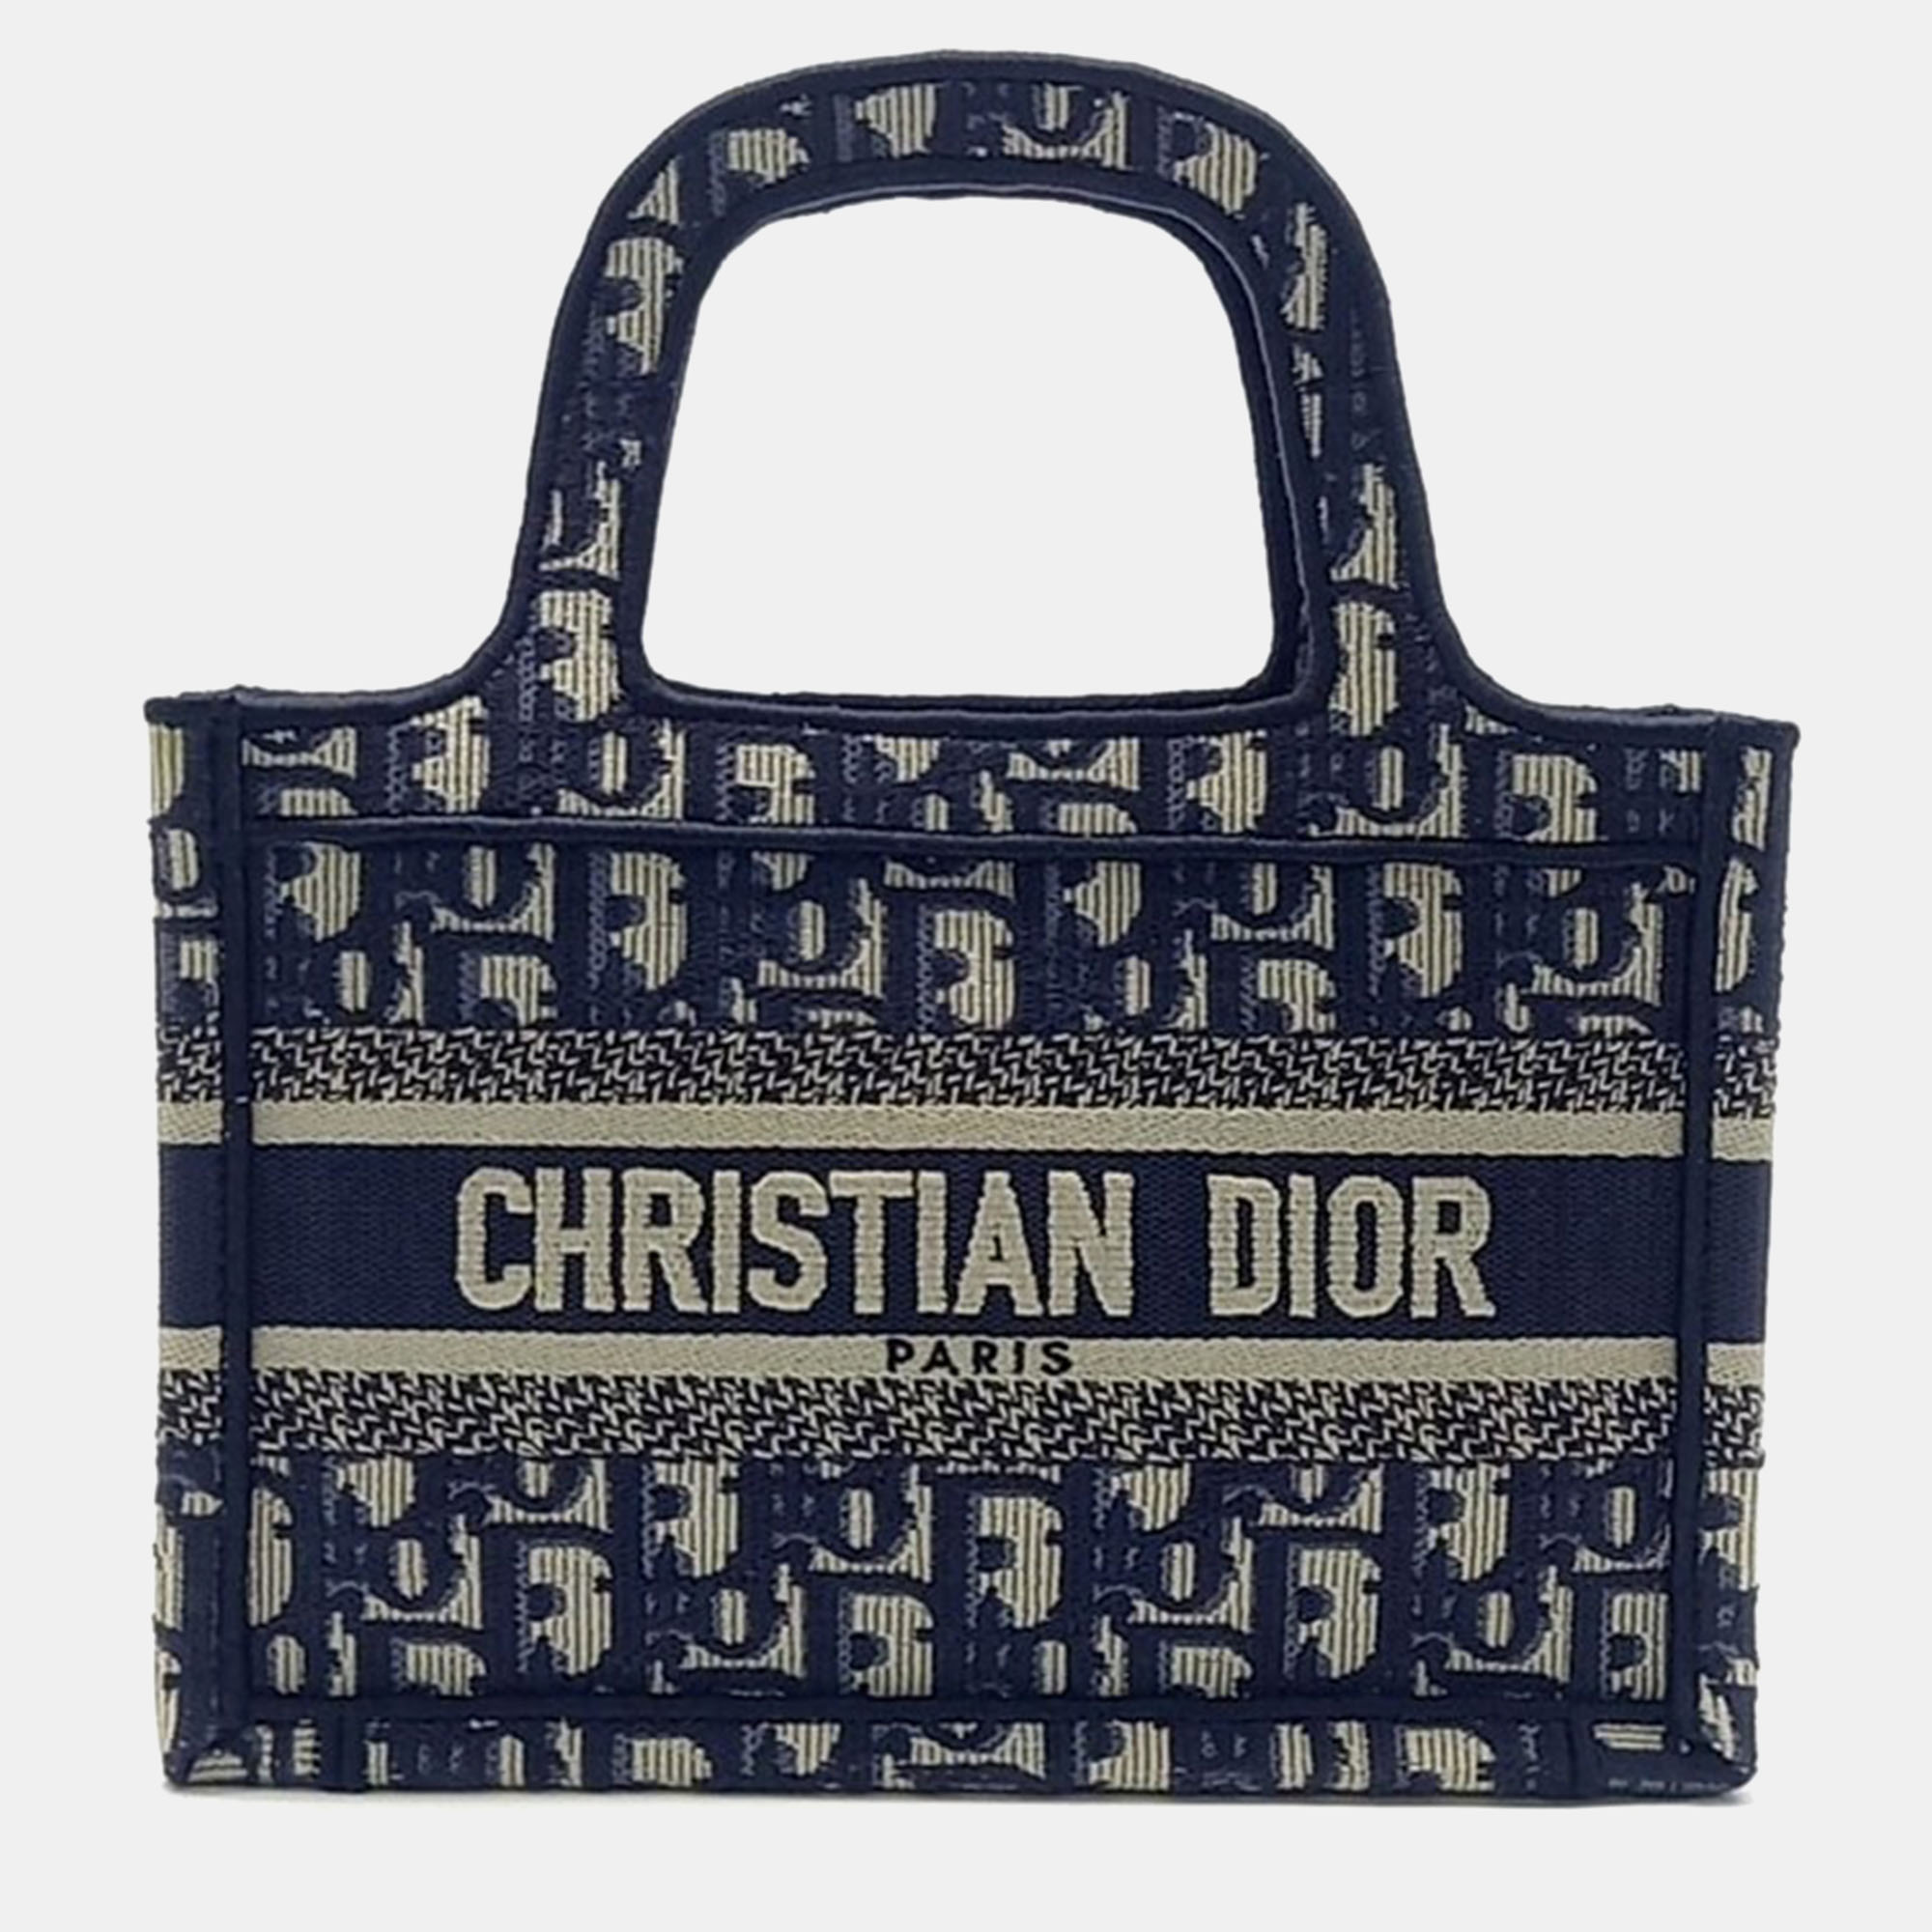 Christian dior oblique book tote mini bag